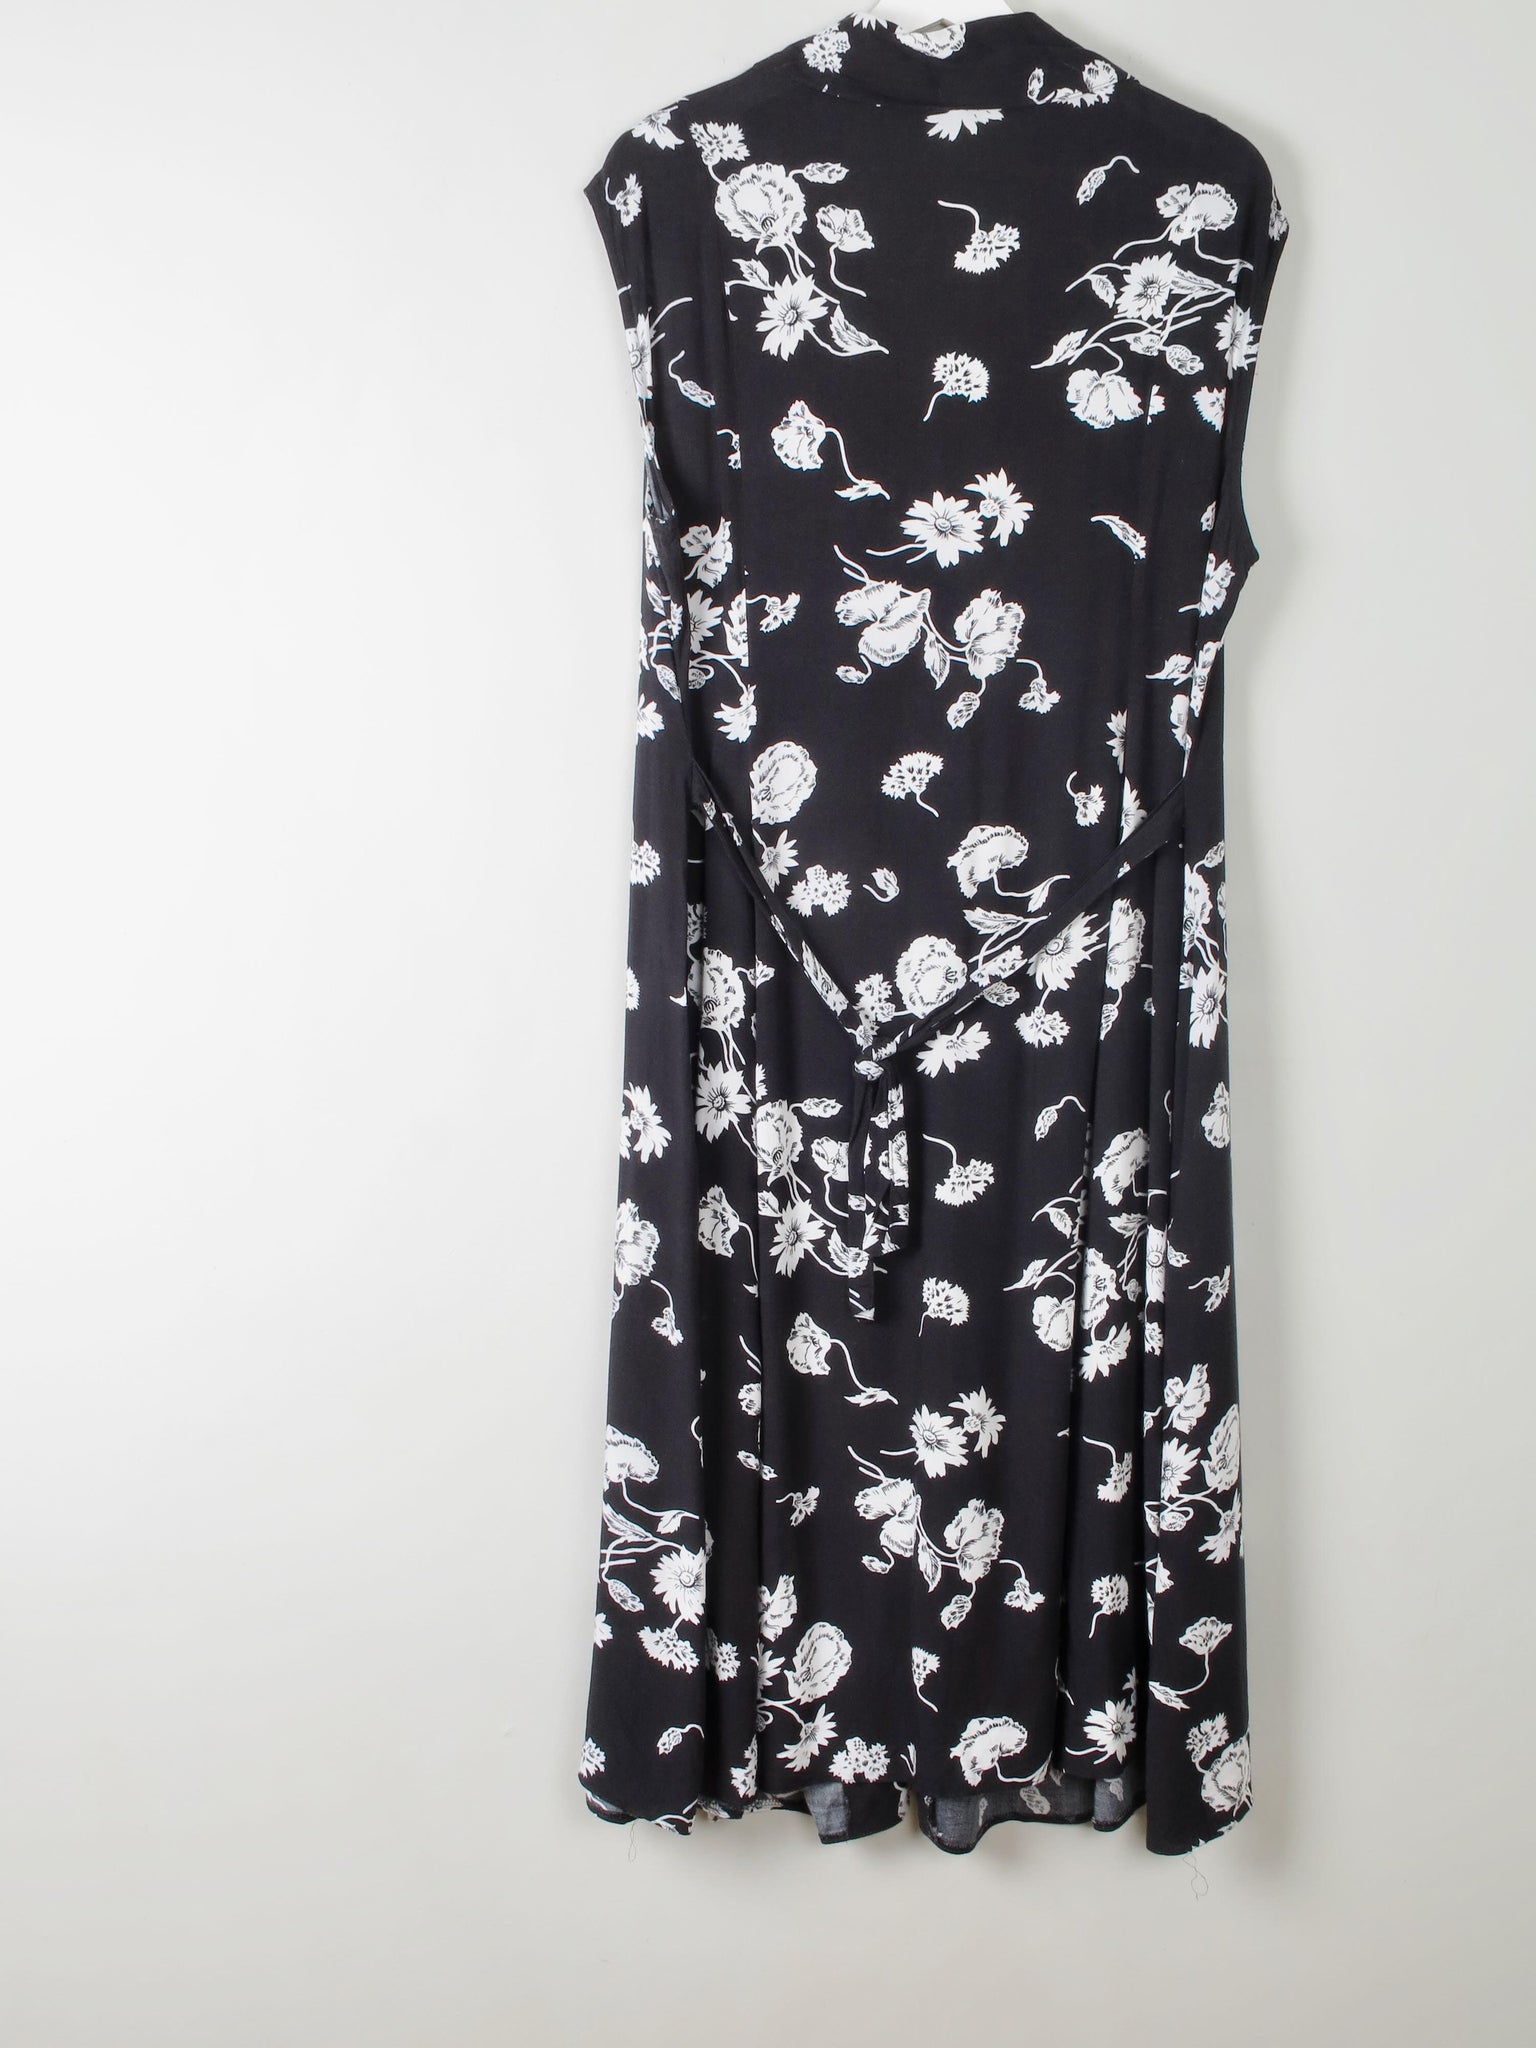 Vintage Black & White Floral Dress - The Harlequin